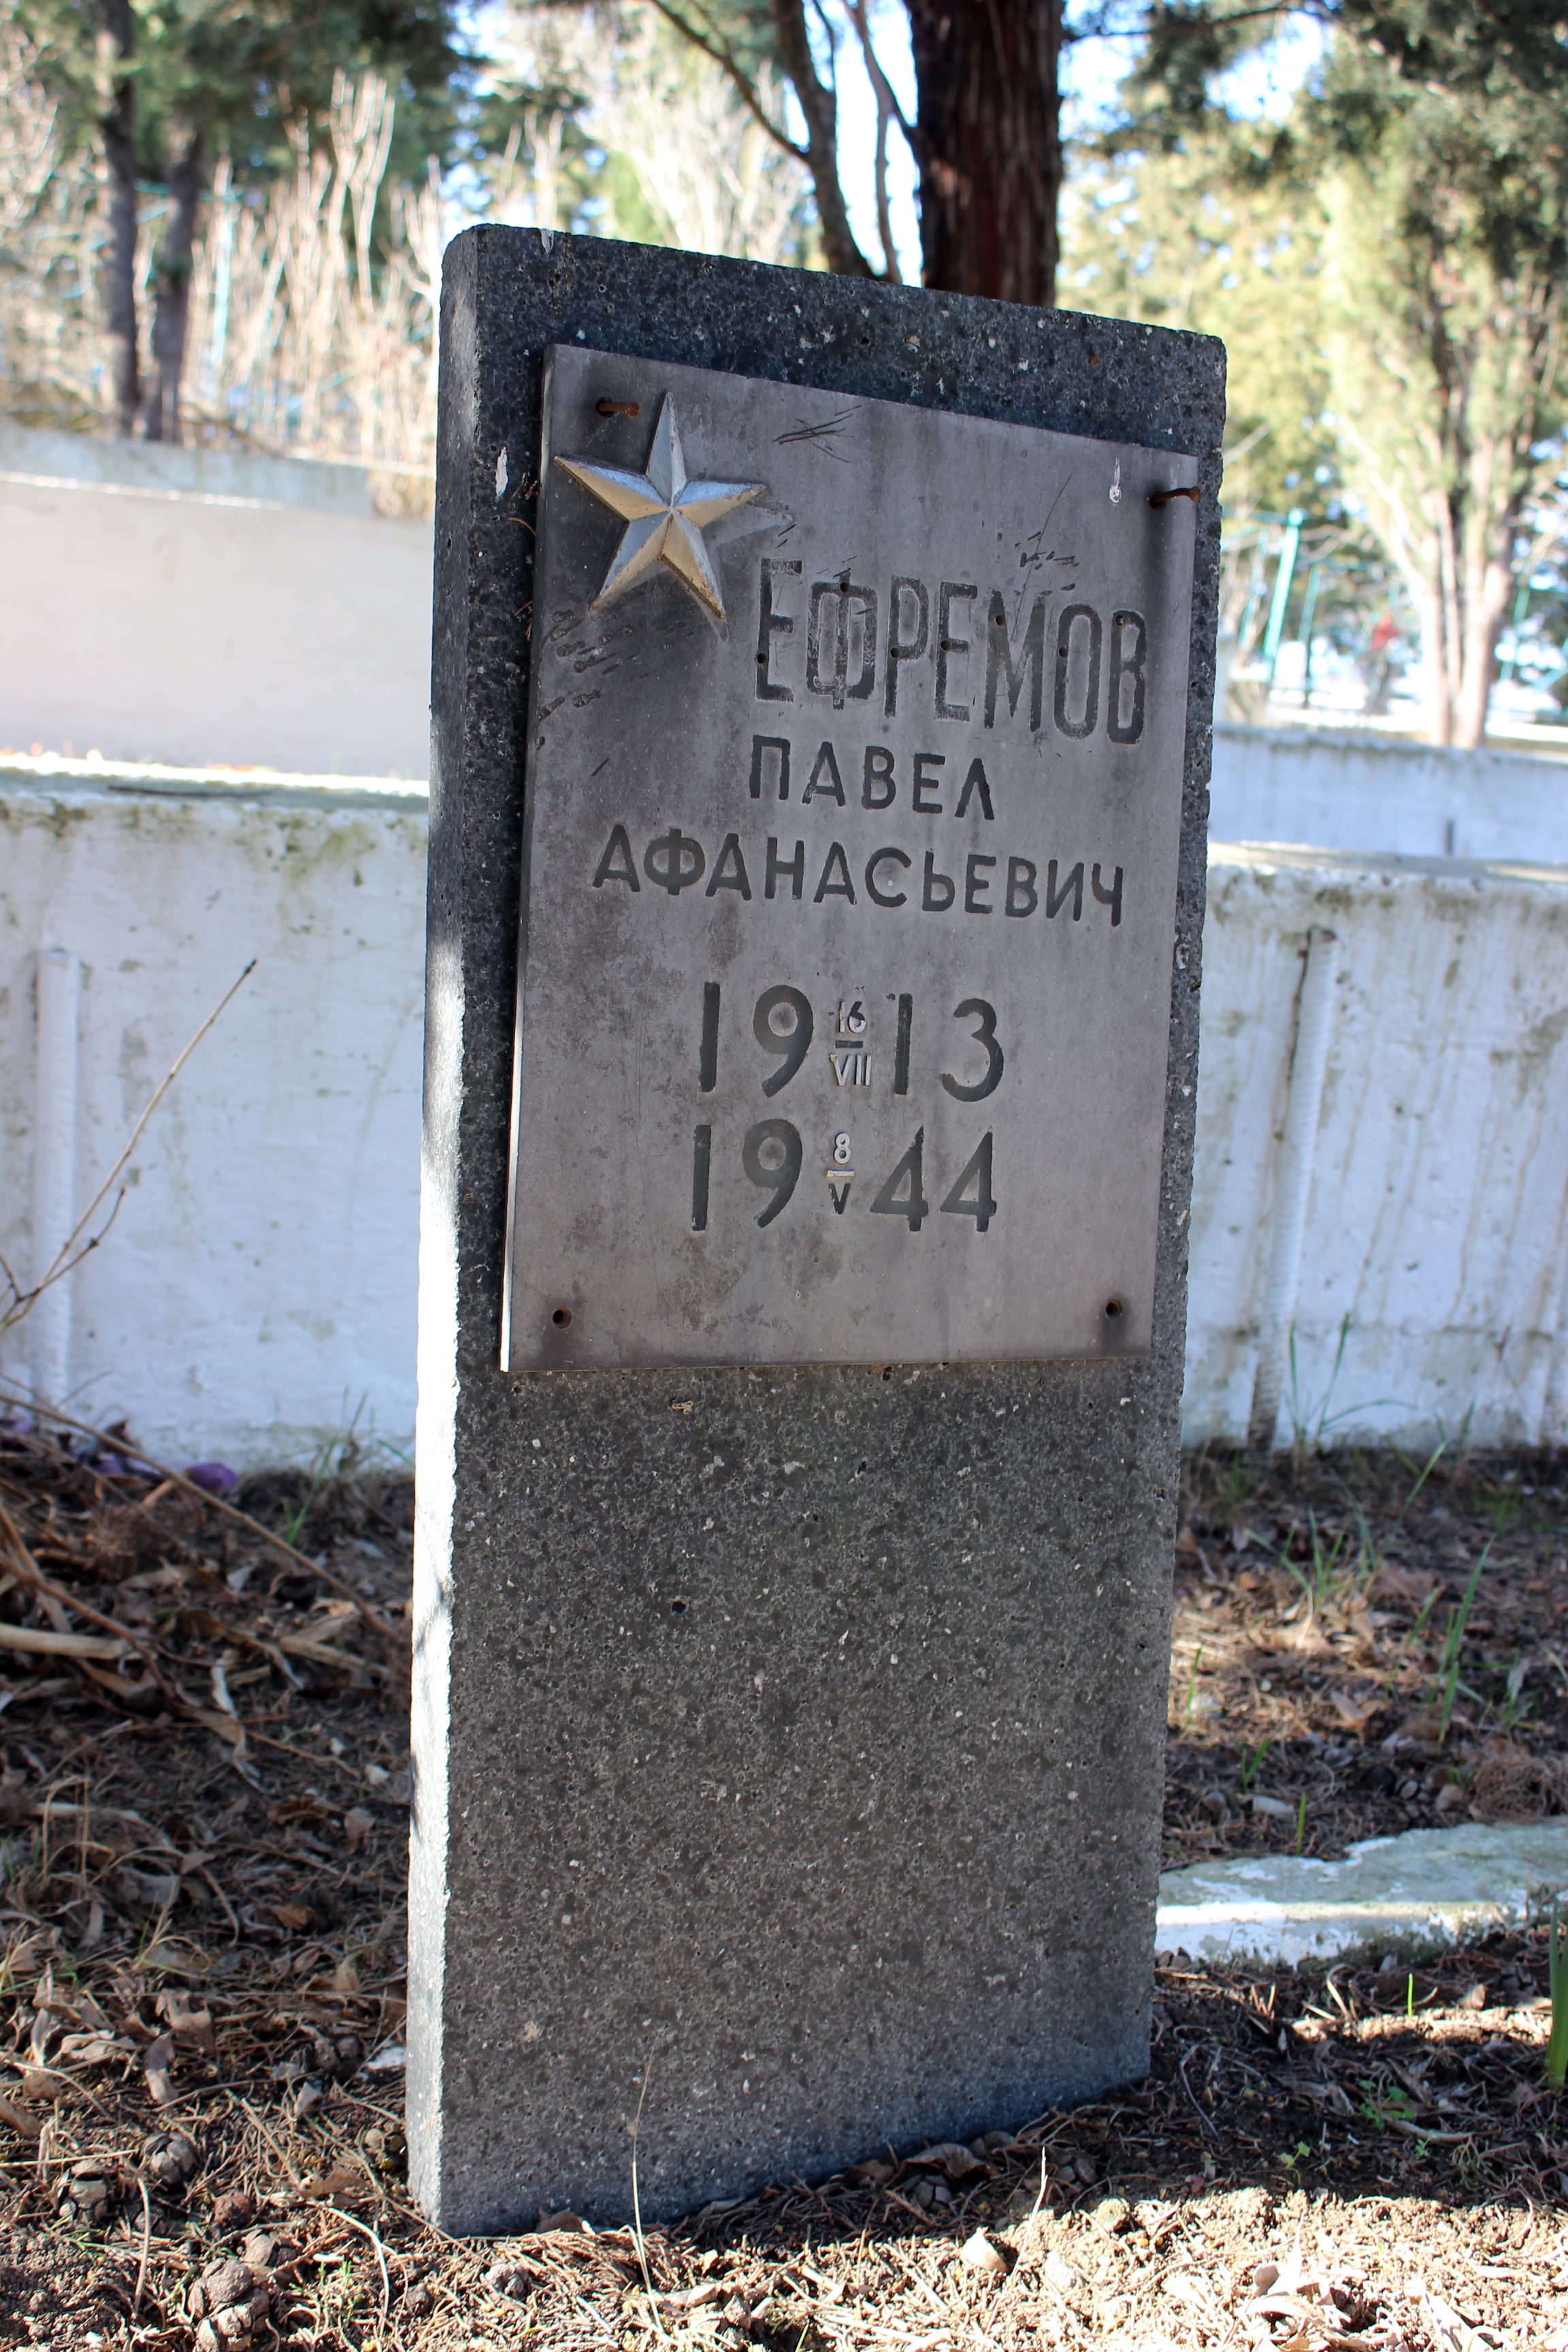 ЕФРЕМОВ Павел Афанасьевич 1913-1944